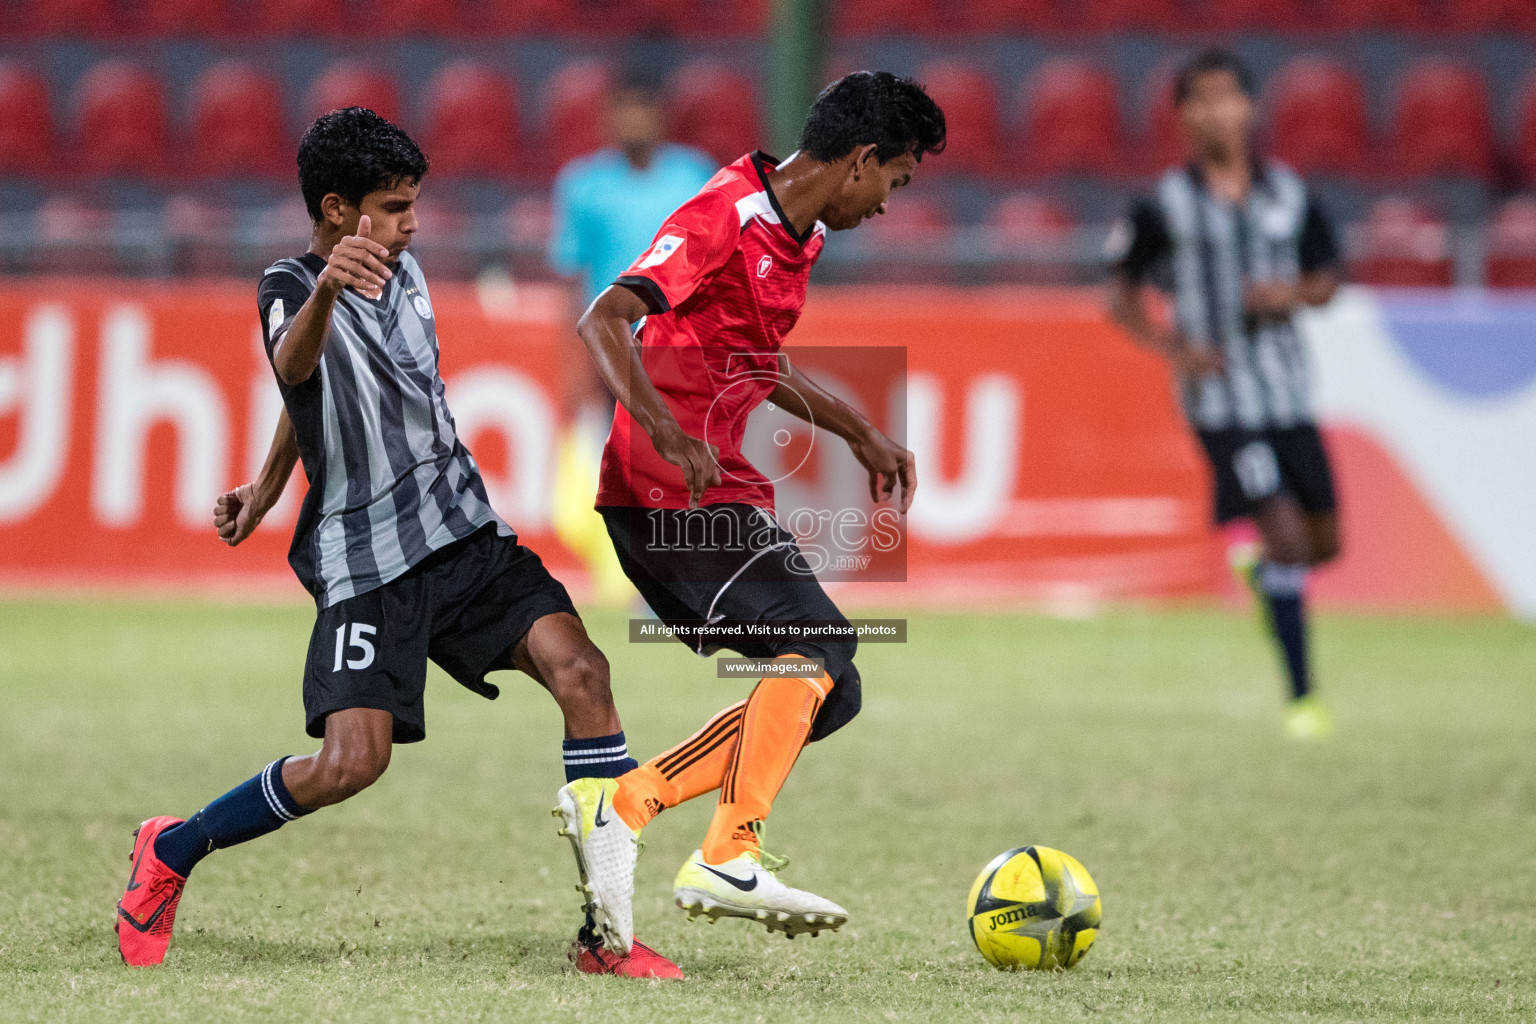 Ahmadhiyya School vs Ghaazee School in MAMEN Inter School Football Tournament 2019 (U18) in Male, Maldives on 28th March 2019, Photos: Suadh Abdul Sattar / images.mv